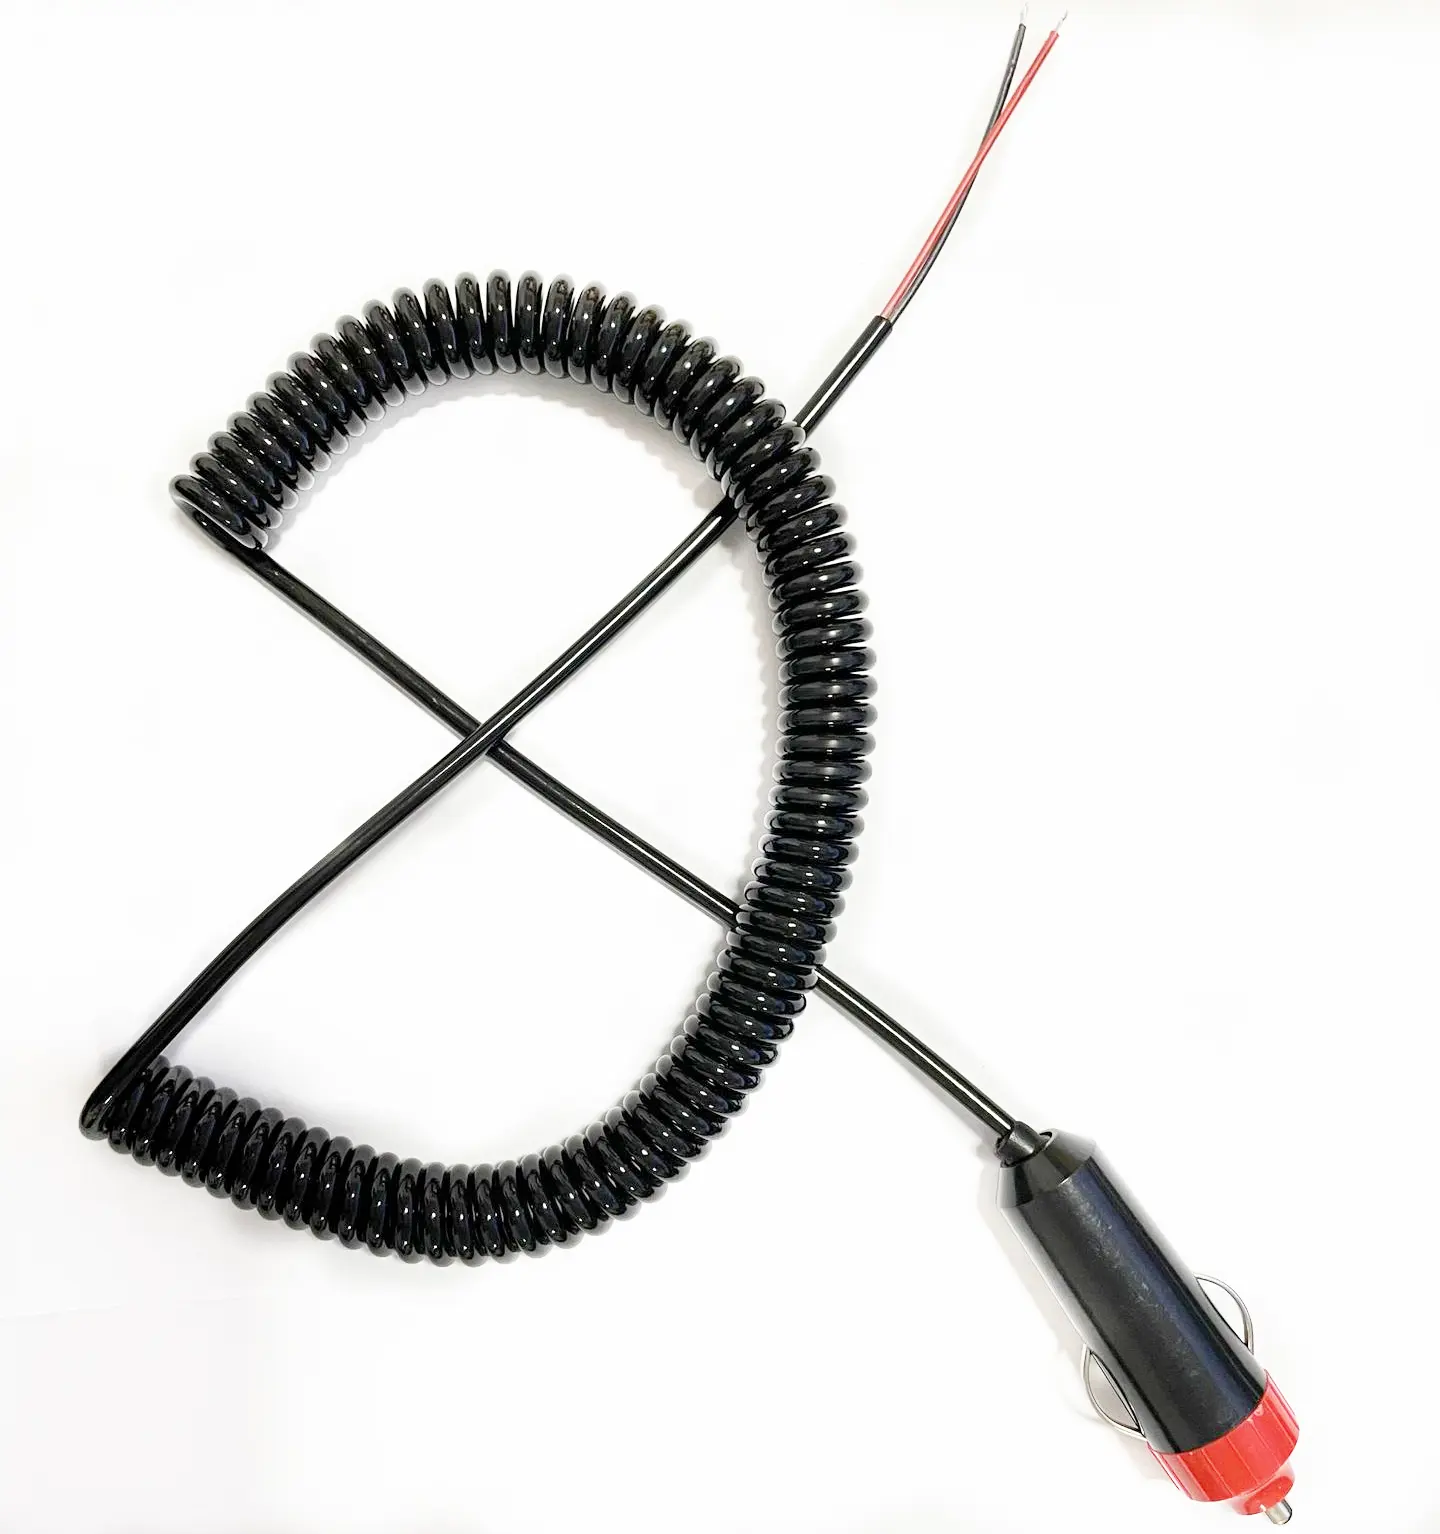 Testa rossa 12V presa accendisigari spina filo nero Sprial con più specifiche cavi presa auto